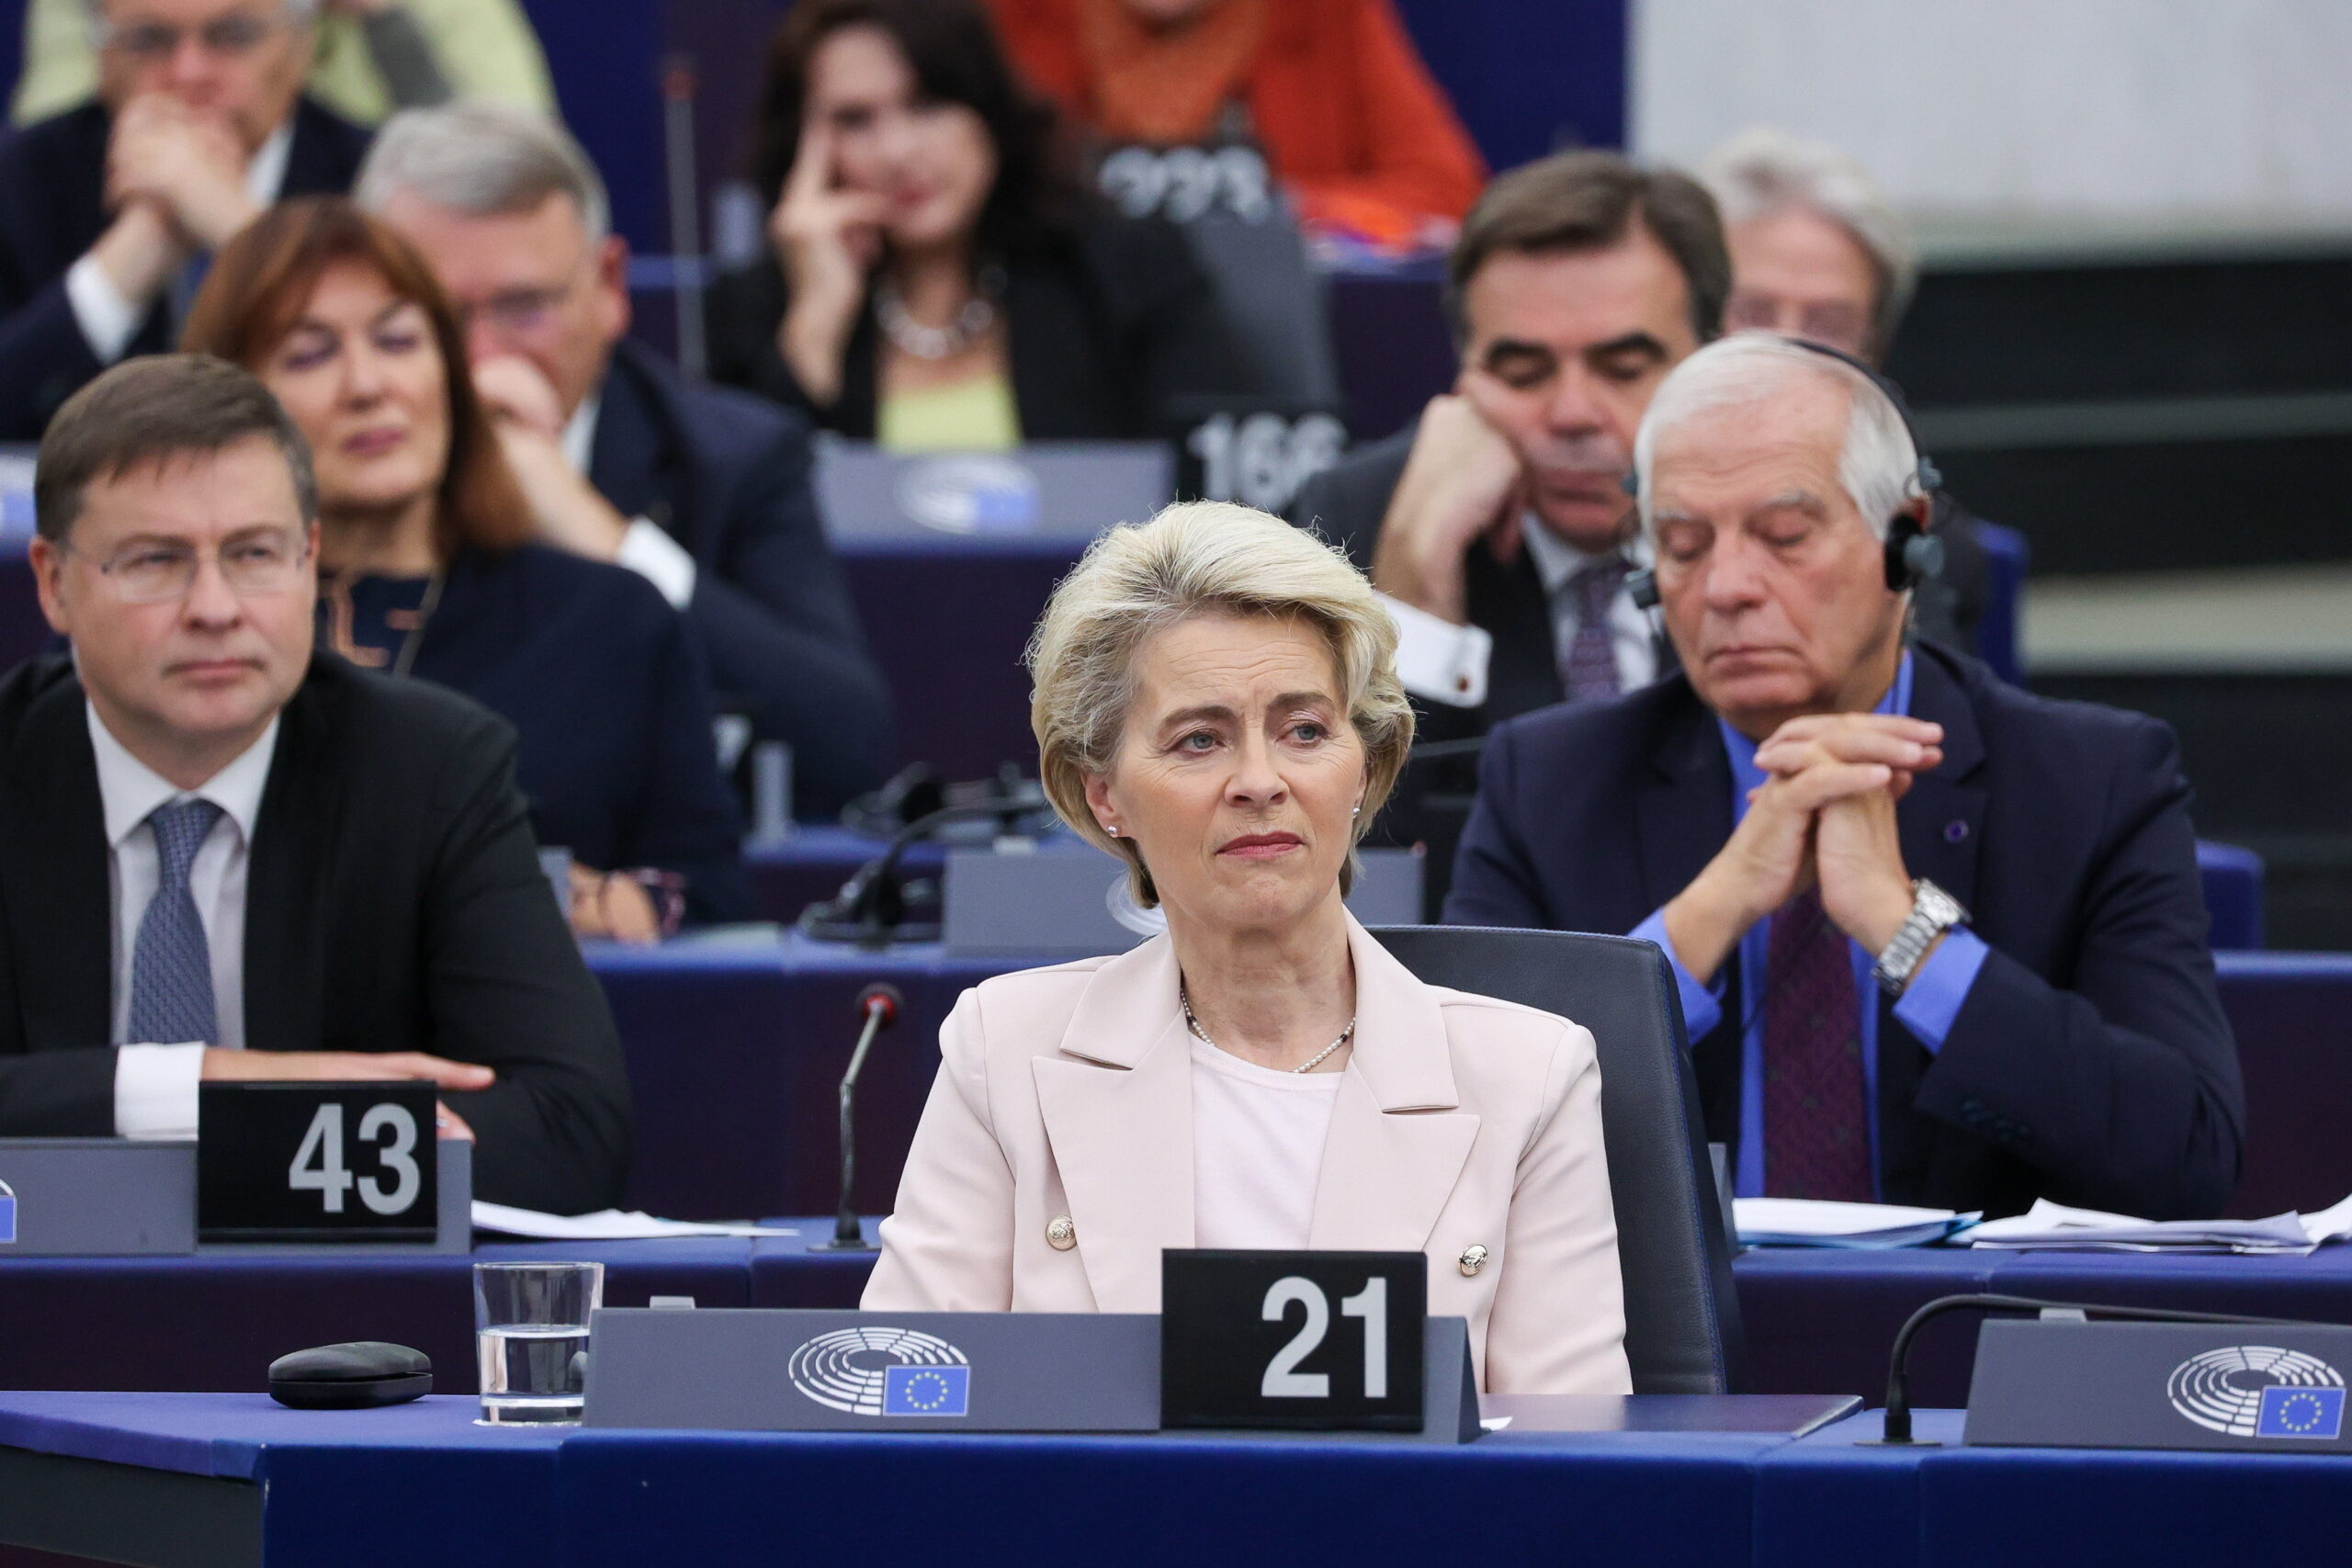 Az EU újabb szankciós csomagot javasolt Oroszországgal szemben – jelentette be Ursula von der Leyen